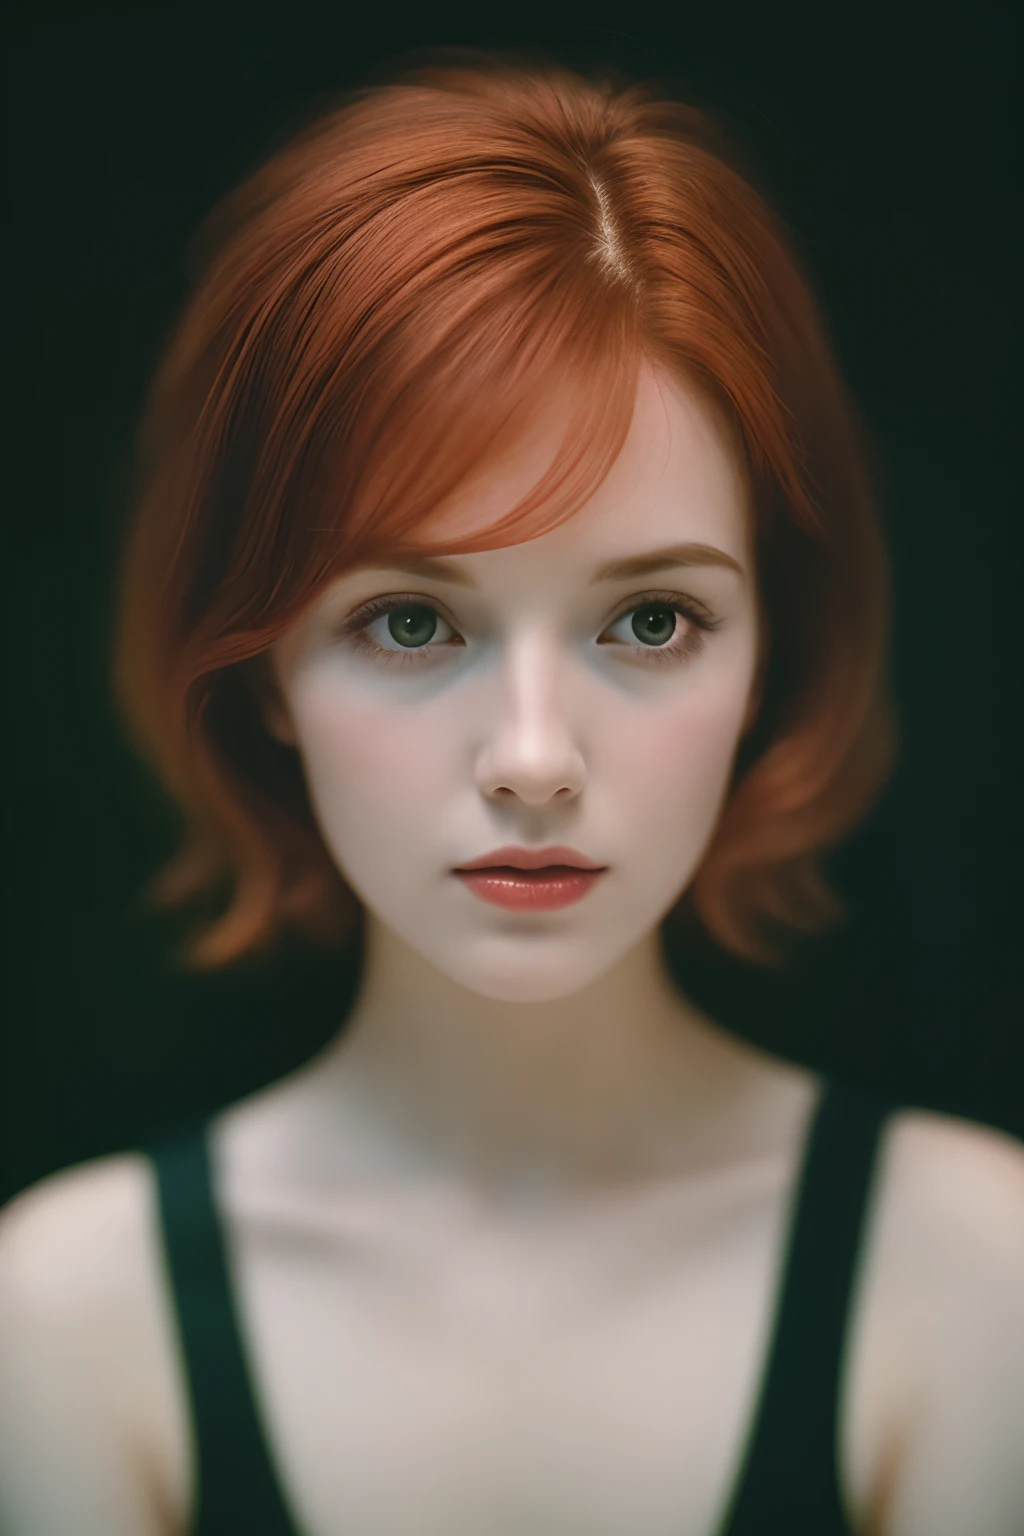 1名女性,在黑暗中, 胶片颗粒, 获奖照片, (绿色色调:0.5), 向侧面看, 红发